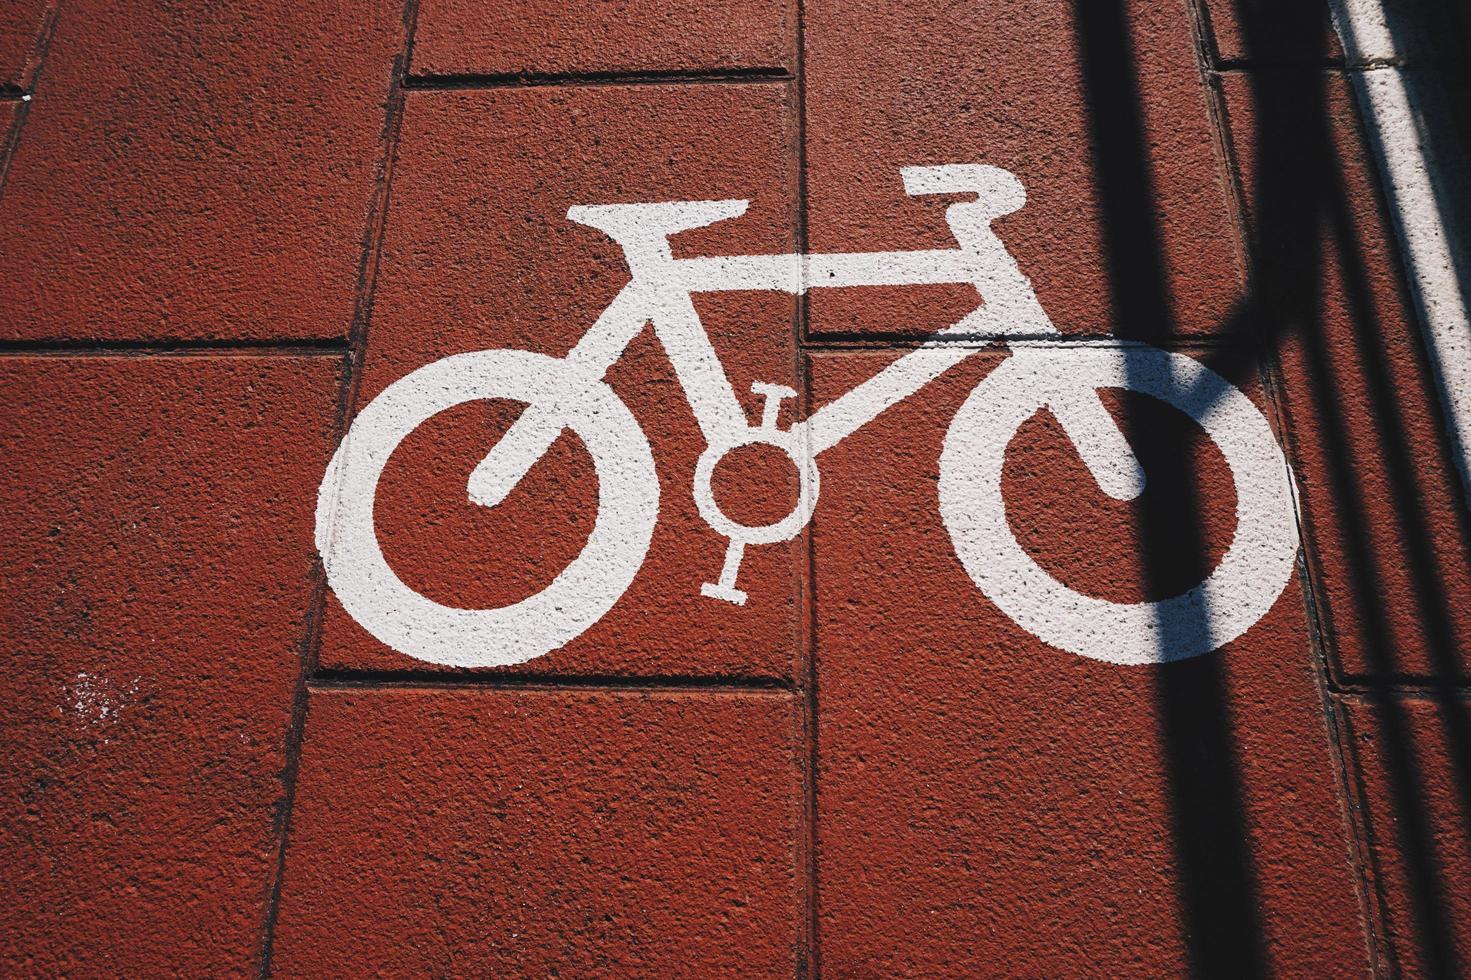 fiets verkeerslicht op straat in bilbao city spanje foto